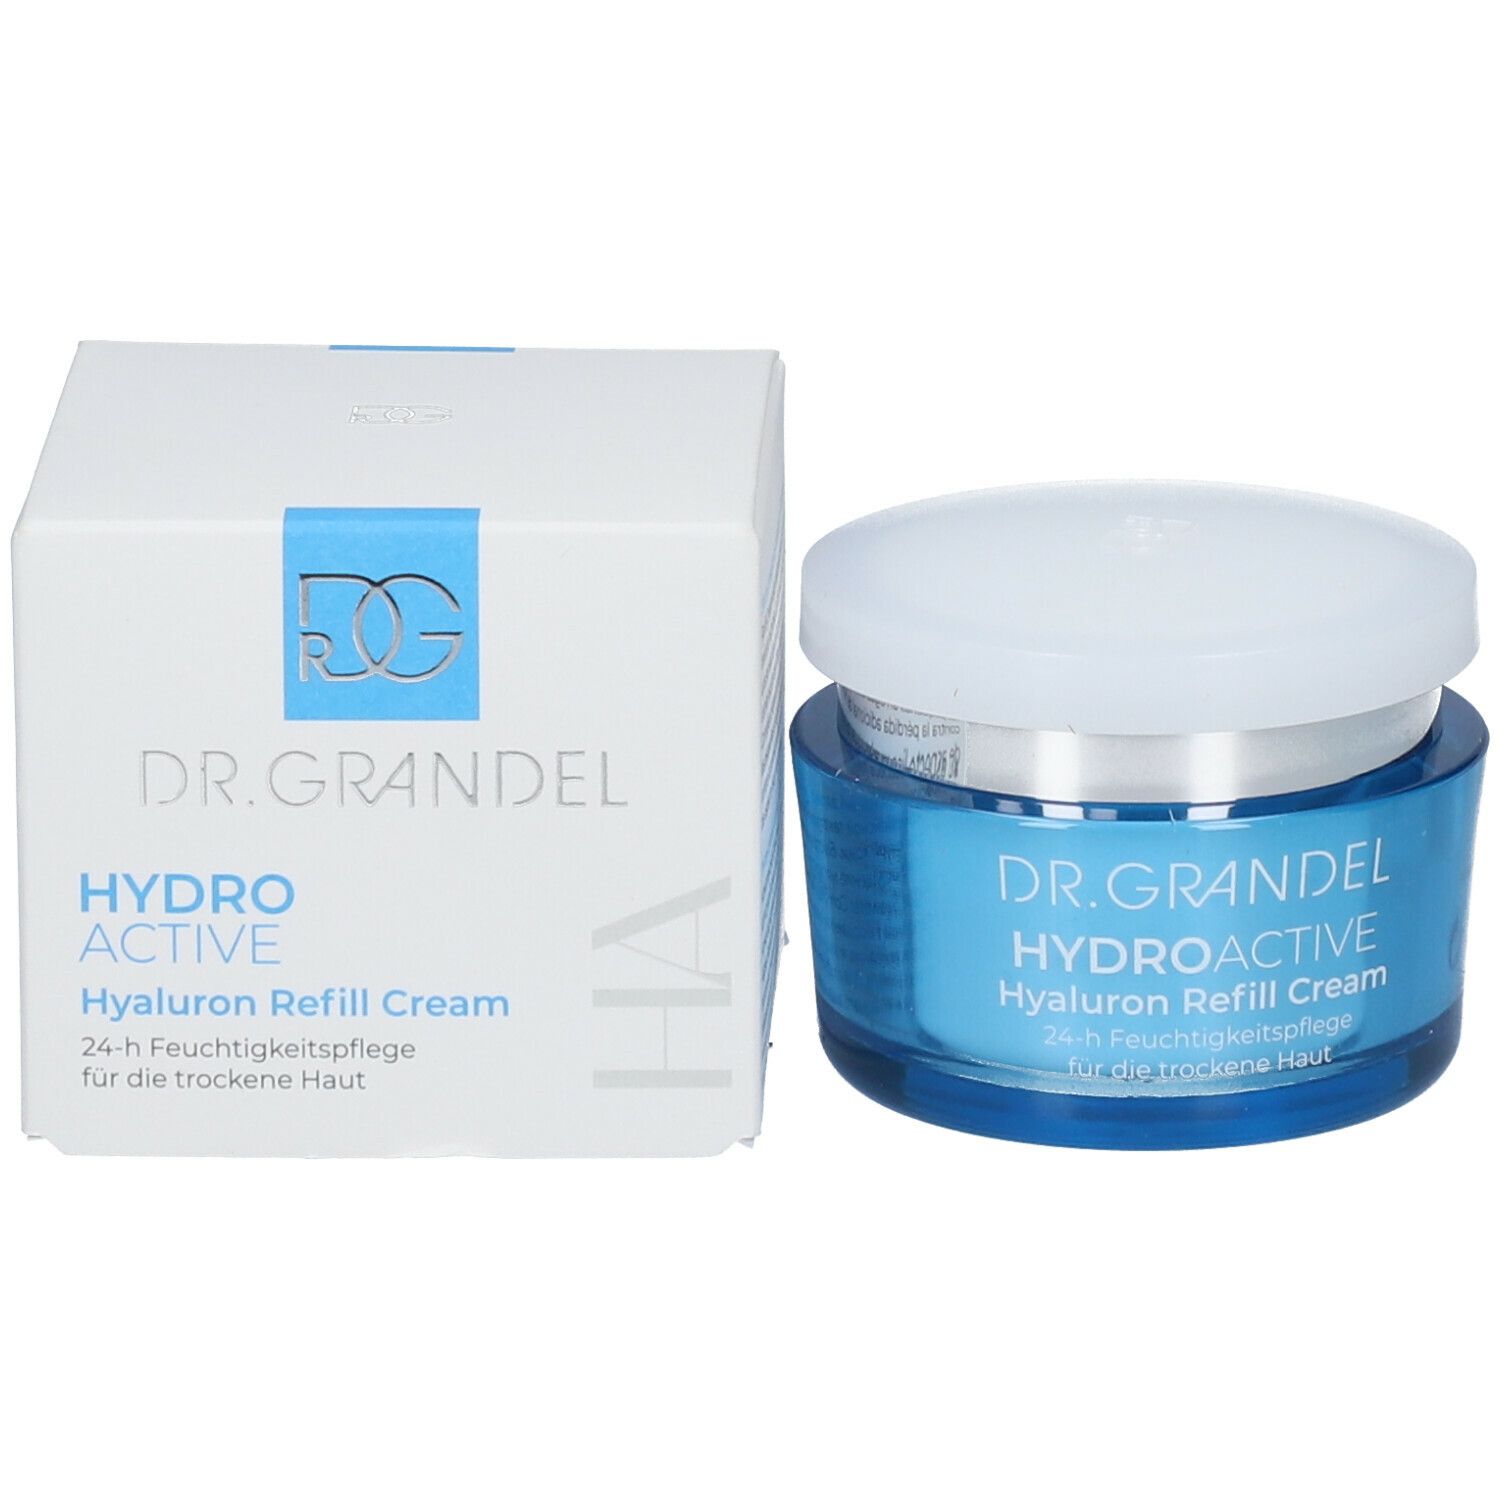 Grandel Hydro Active Hyaluron Refill Creme 50 Ml Shop Apothekech 8130